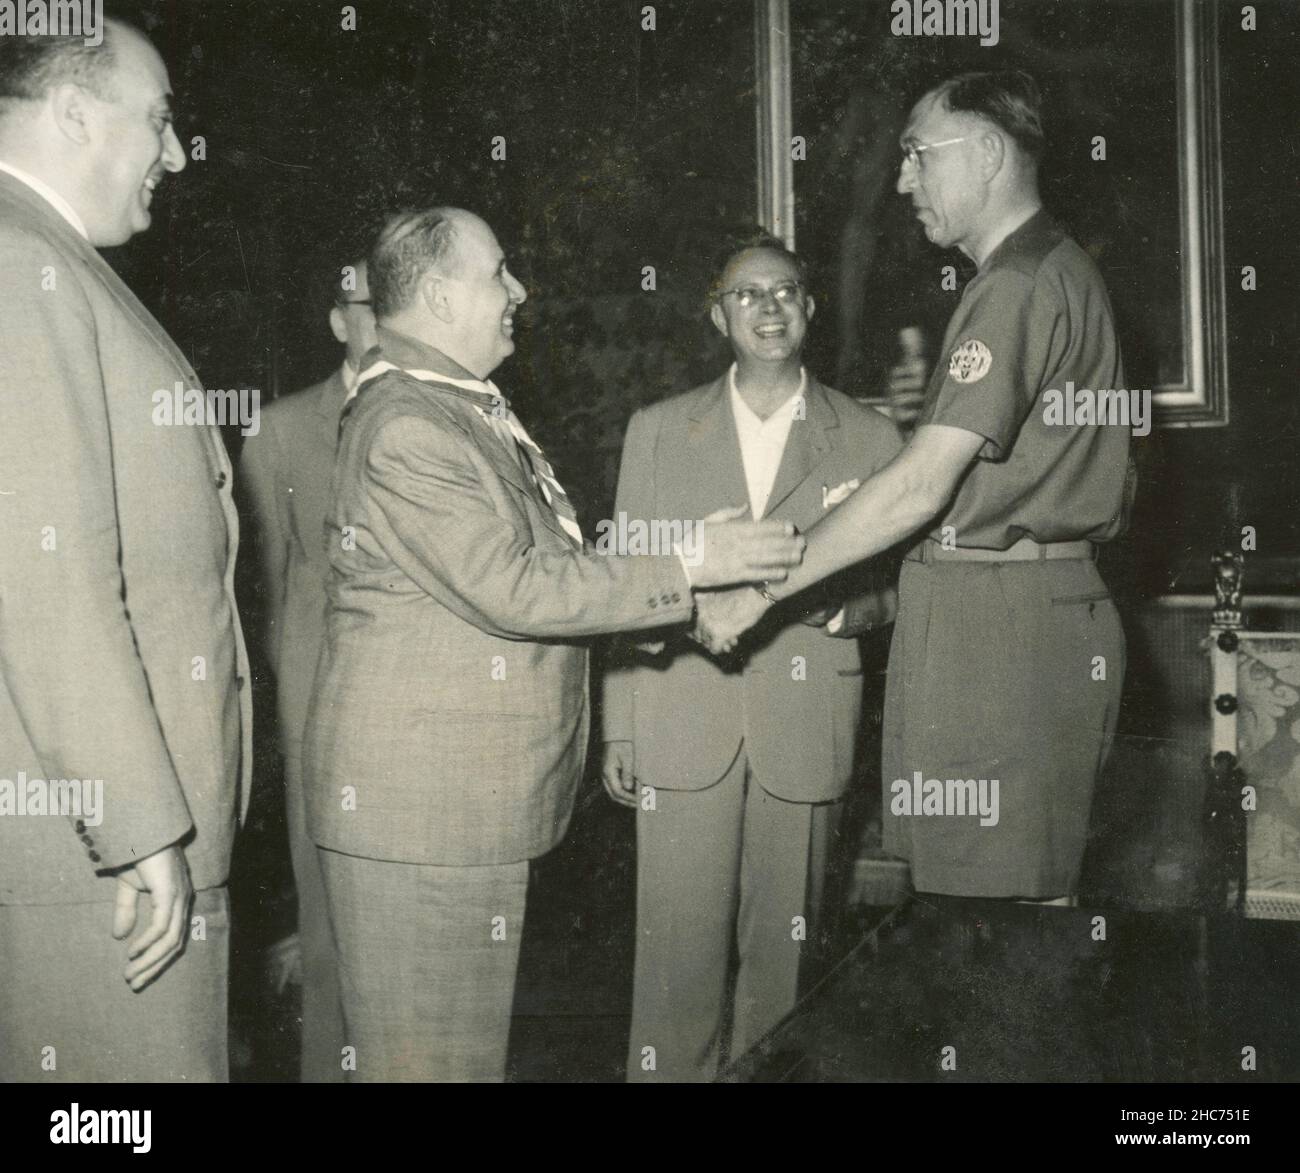 Le maire de Rome, Salvatore Rebecchini, rencontre le délégué au Scoutisme Wes Klusmann des Etats-Unis, Italie 1950s Banque D'Images